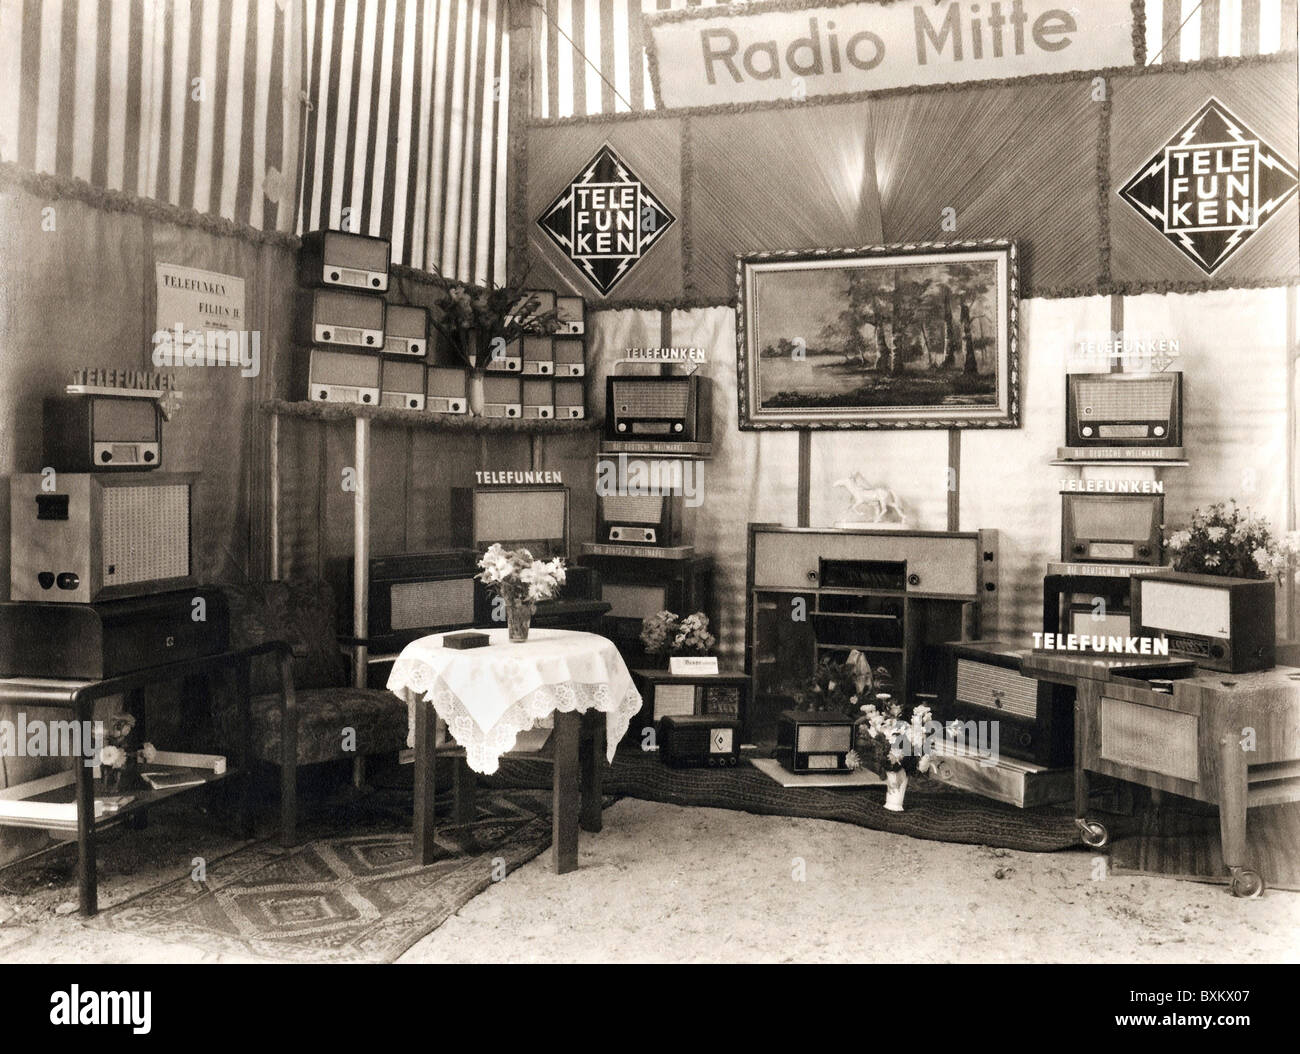 Radio, radio, escaparate de una tienda de radio, Berlin Mitte, radio de Telefunken, Berlín, este-Alemania, 1949, Derechos adicionales-Clearences-no disponible Foto de stock